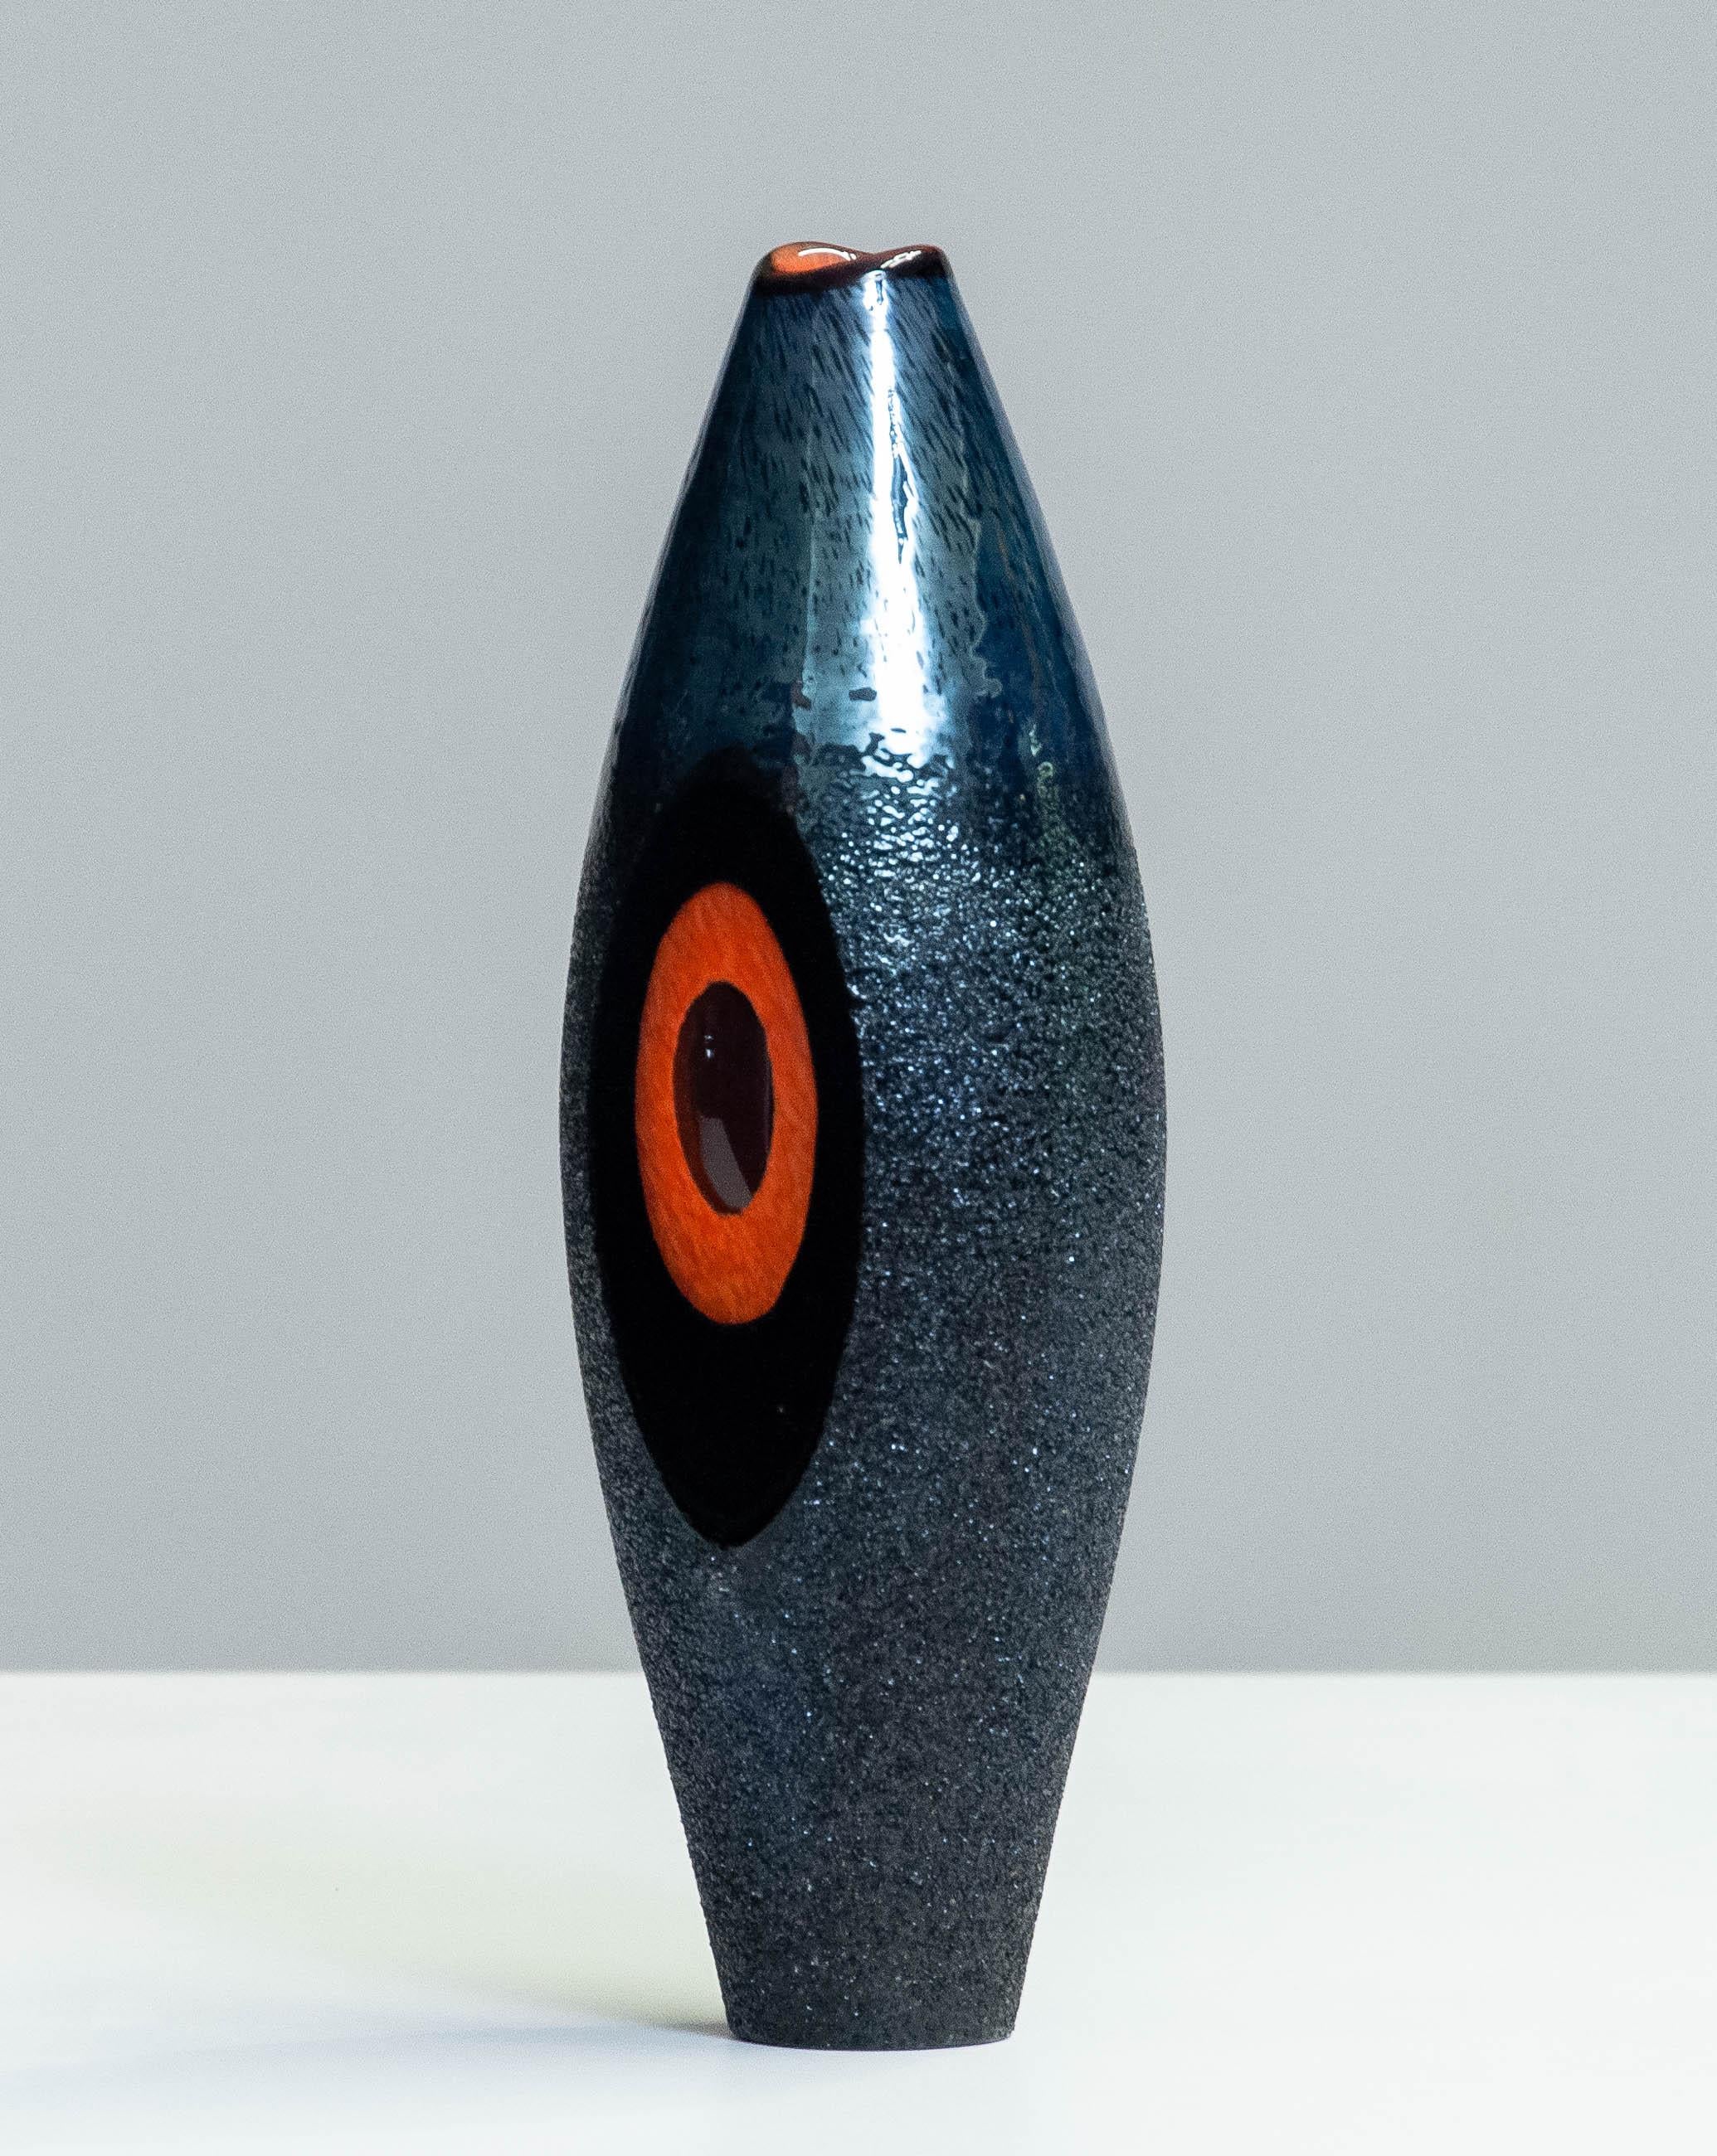 Wunderschönes Stück Kunstglas, geformt zu einer Vase für die Collection'S Moonlanding